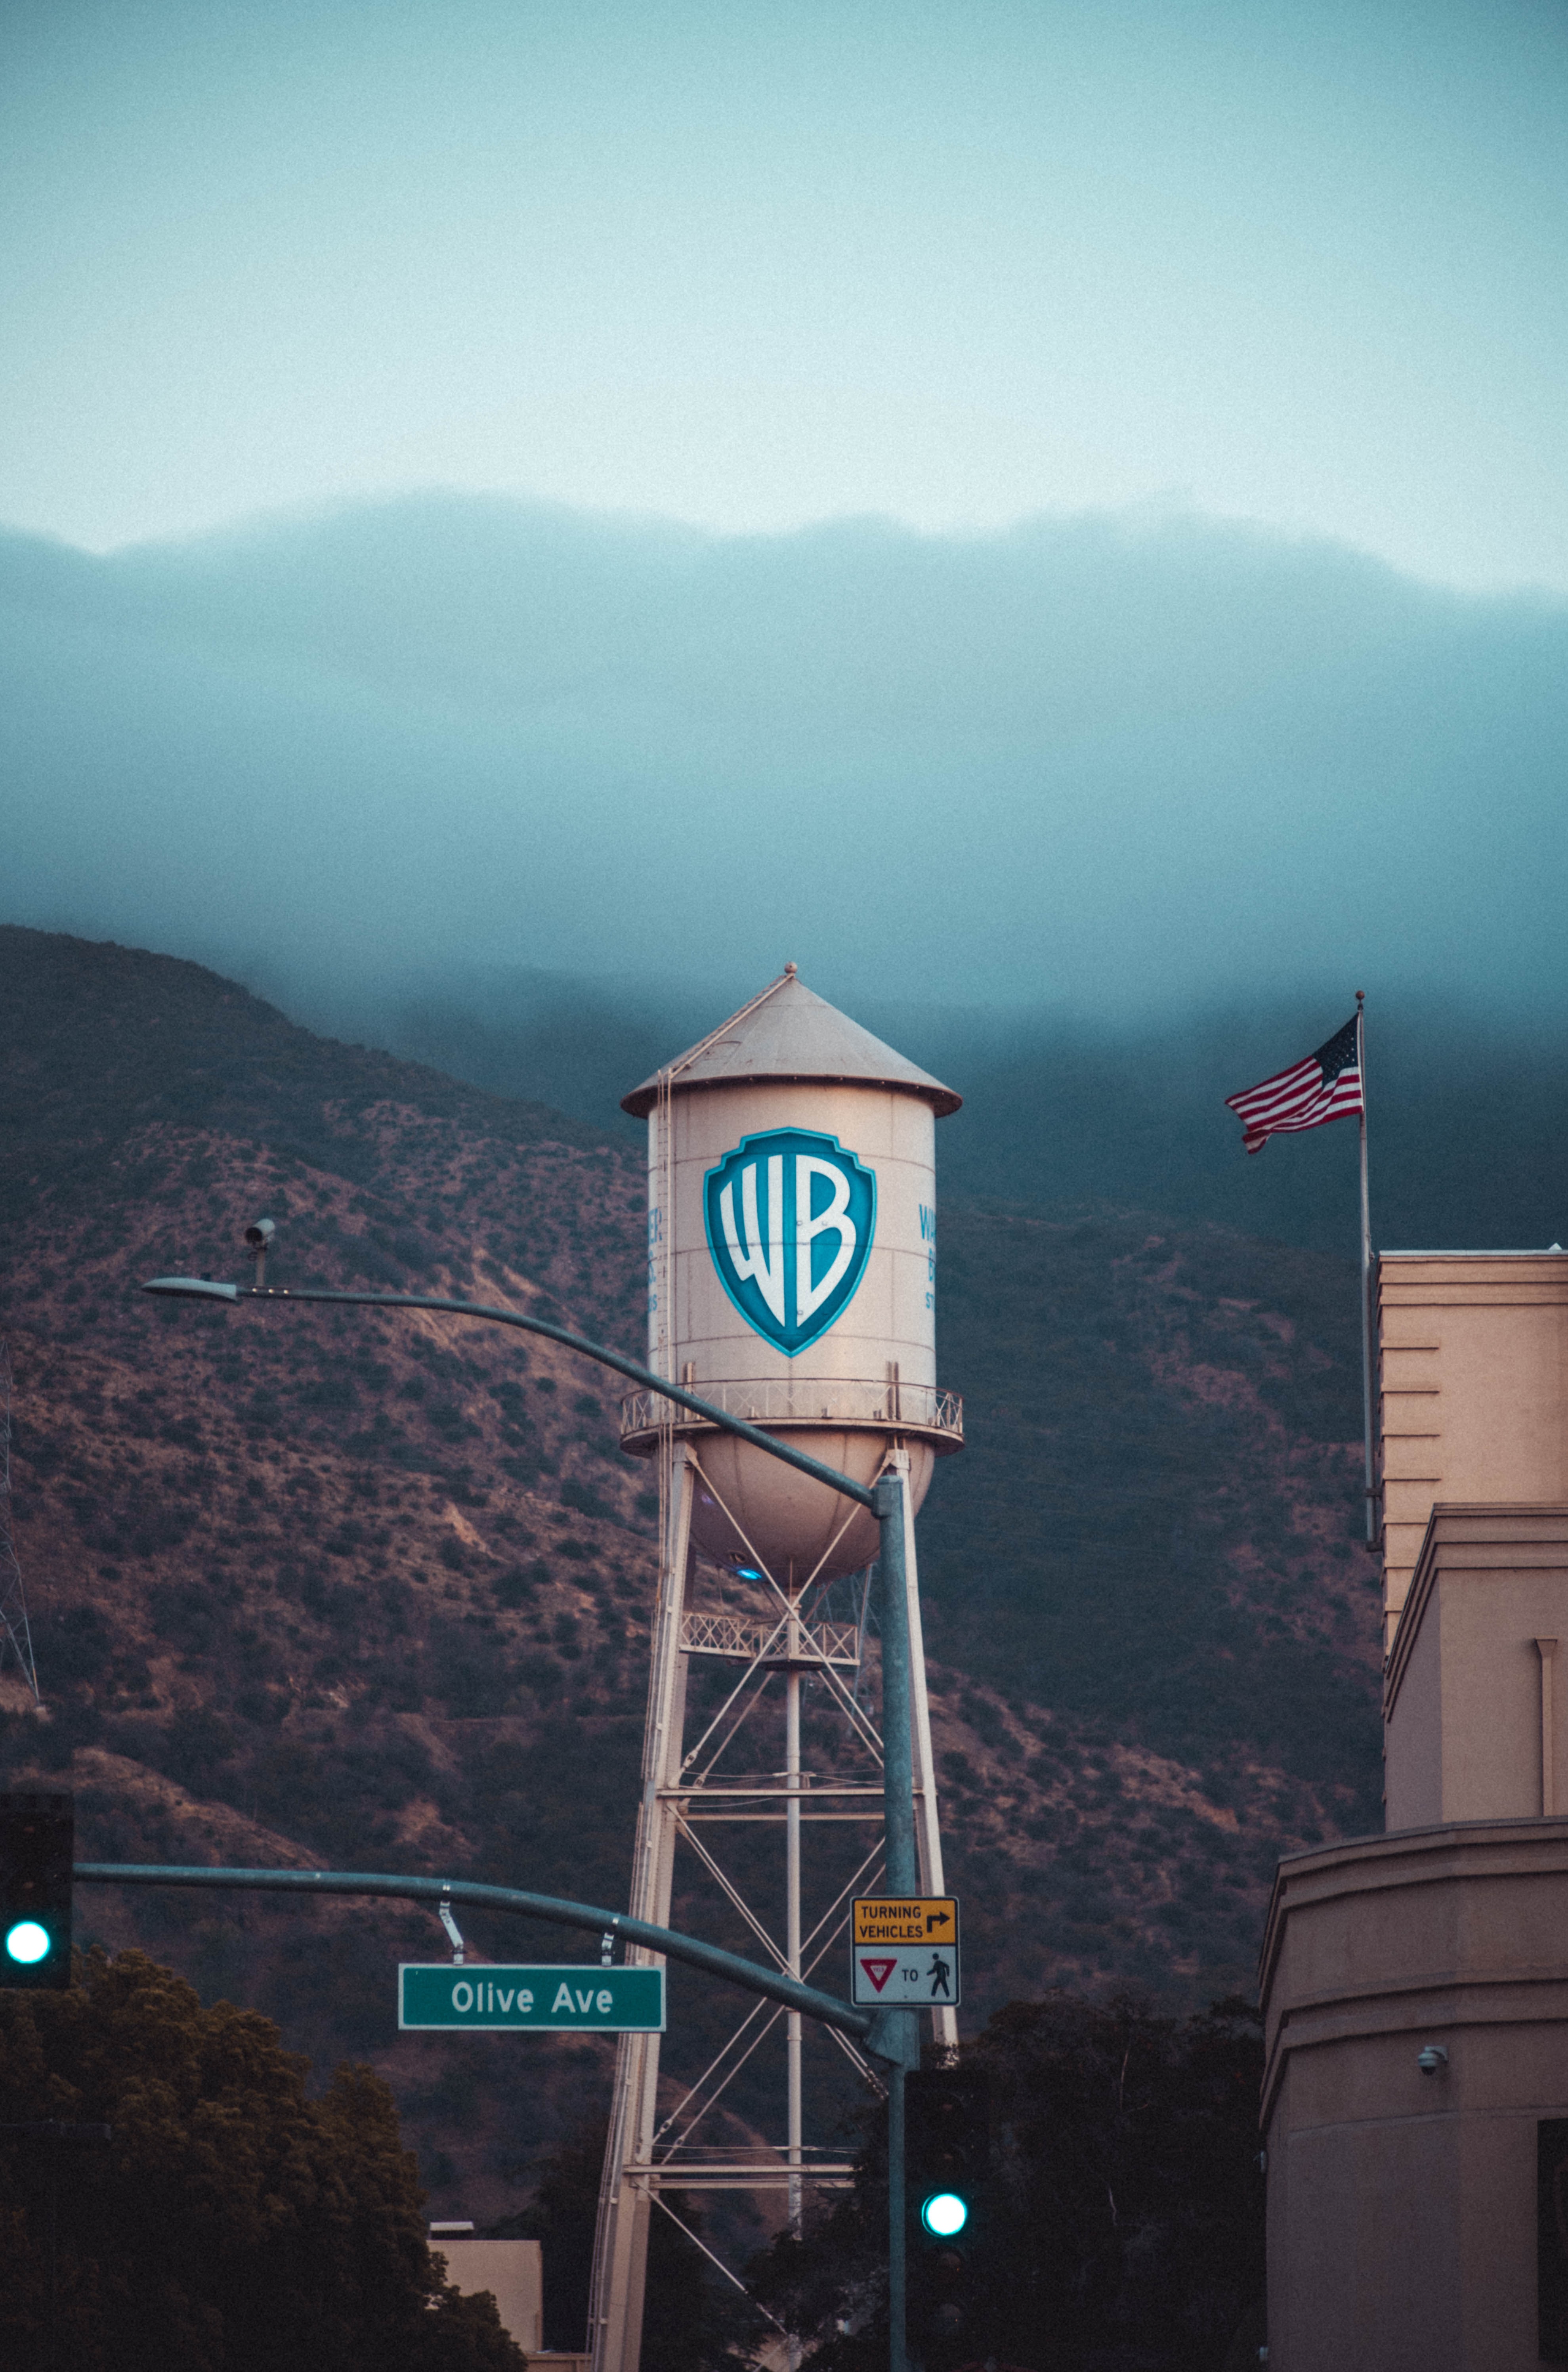 Stávky způsobují společnosti Warner Bros problémy